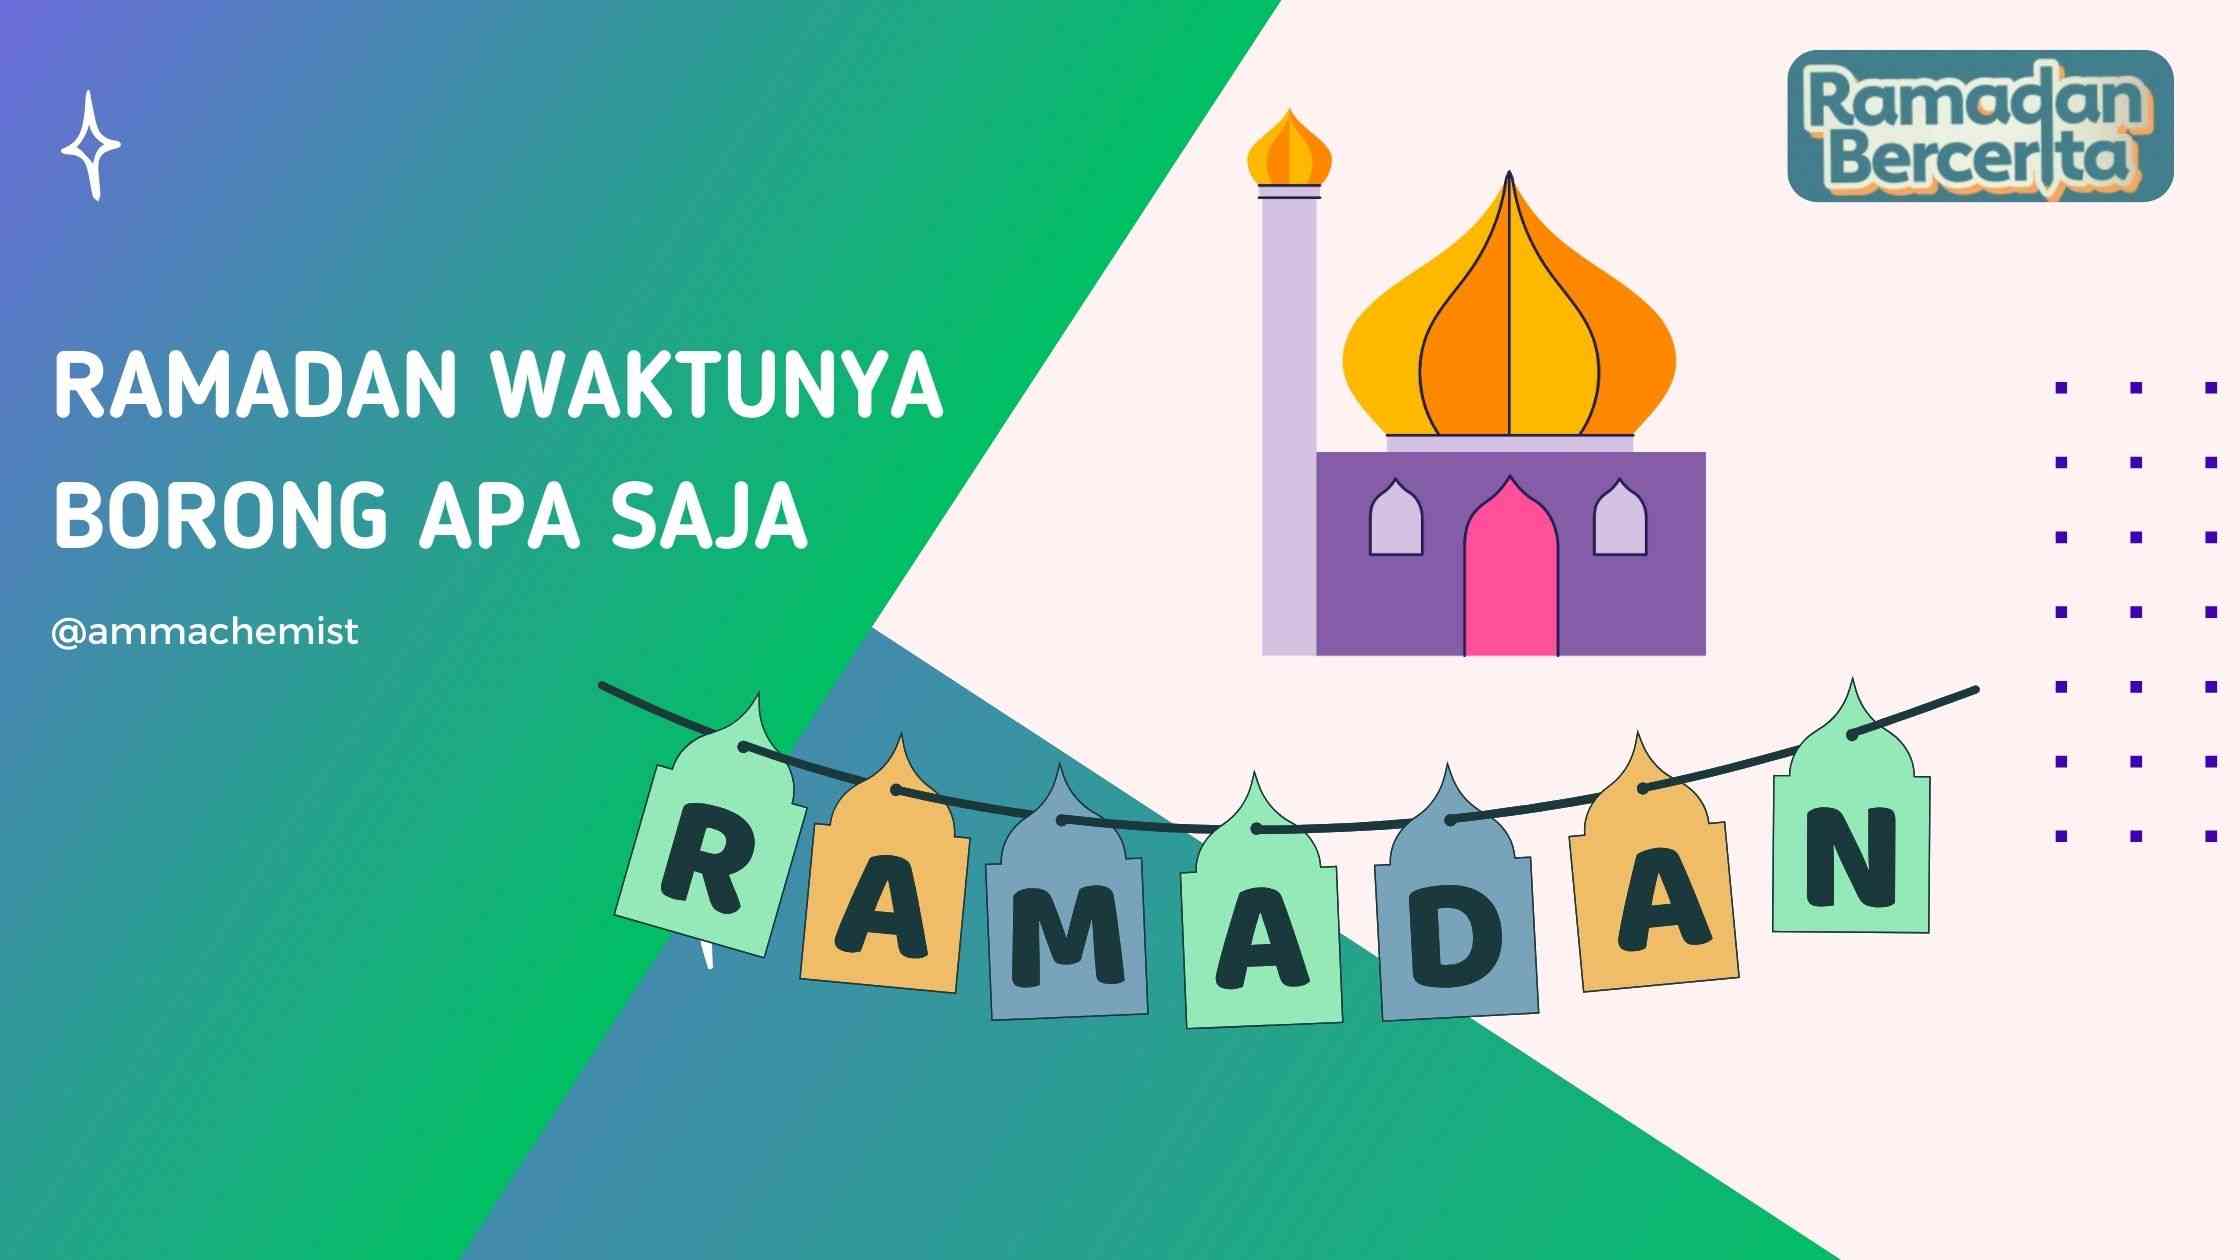 Ramadan Waktunya Borong Apa Saja